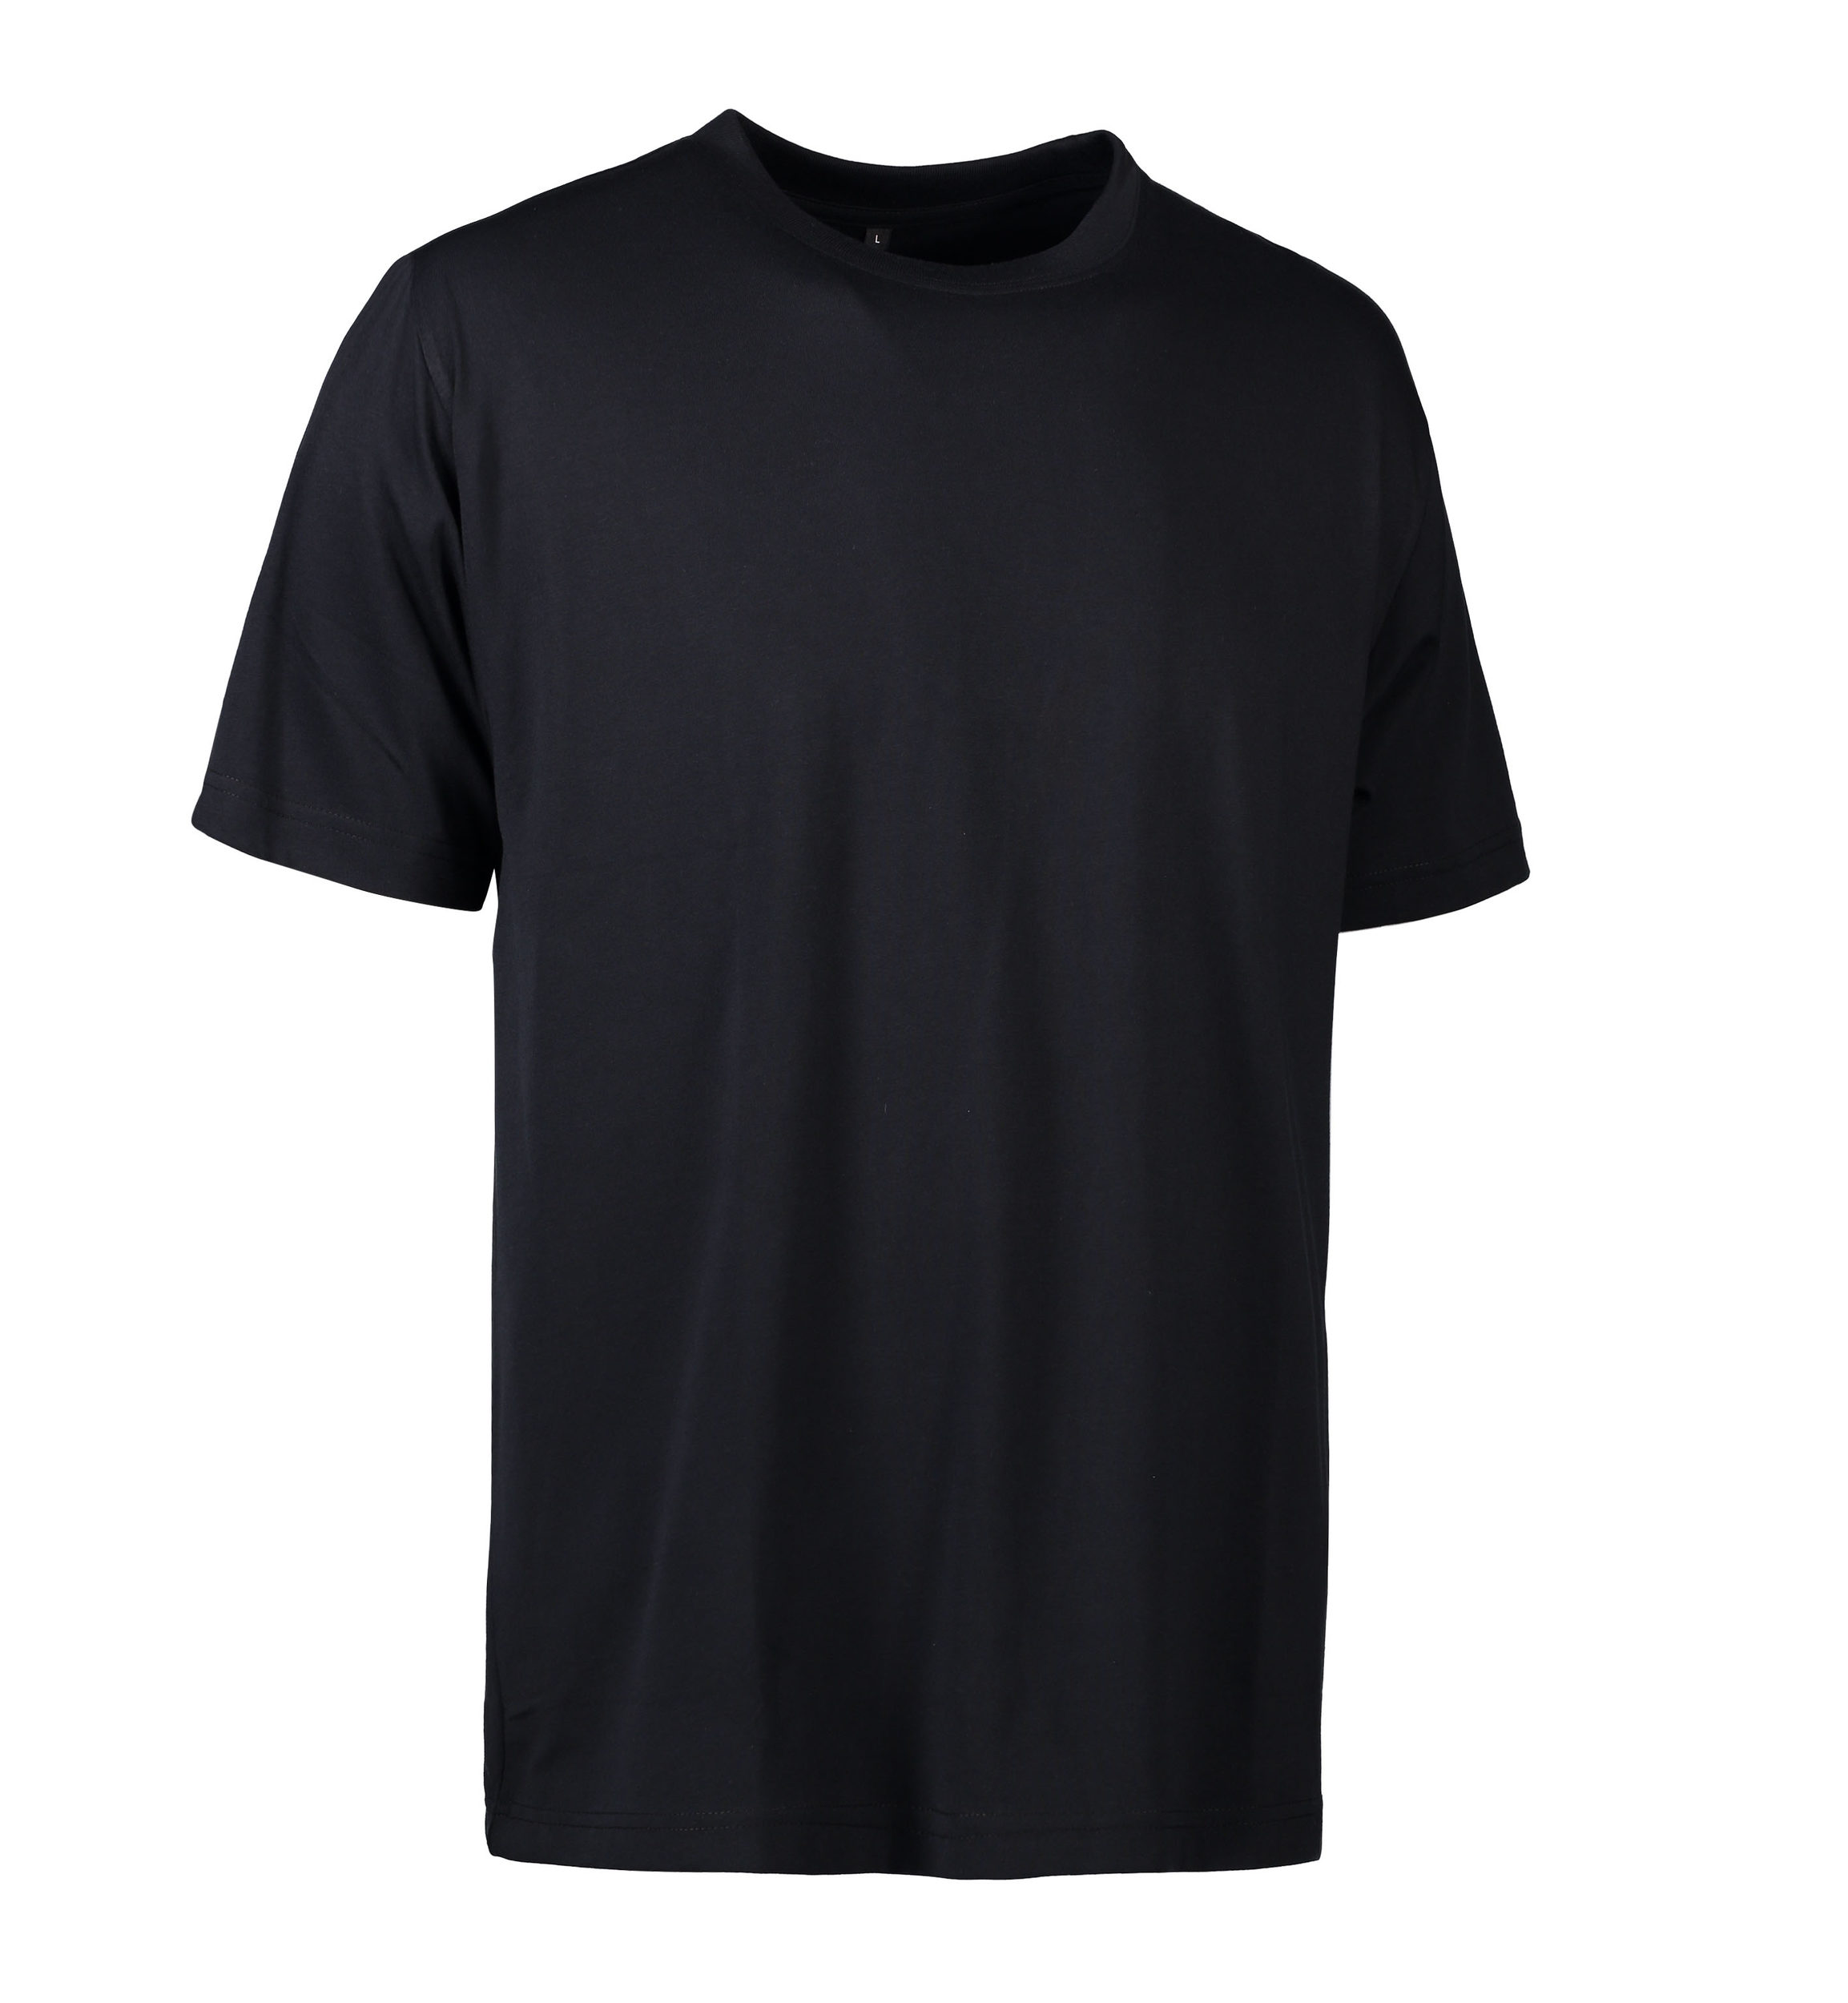 Se Slidstærk t-shirt i sort til mænd - S hos Sygeplejebutikken.dk